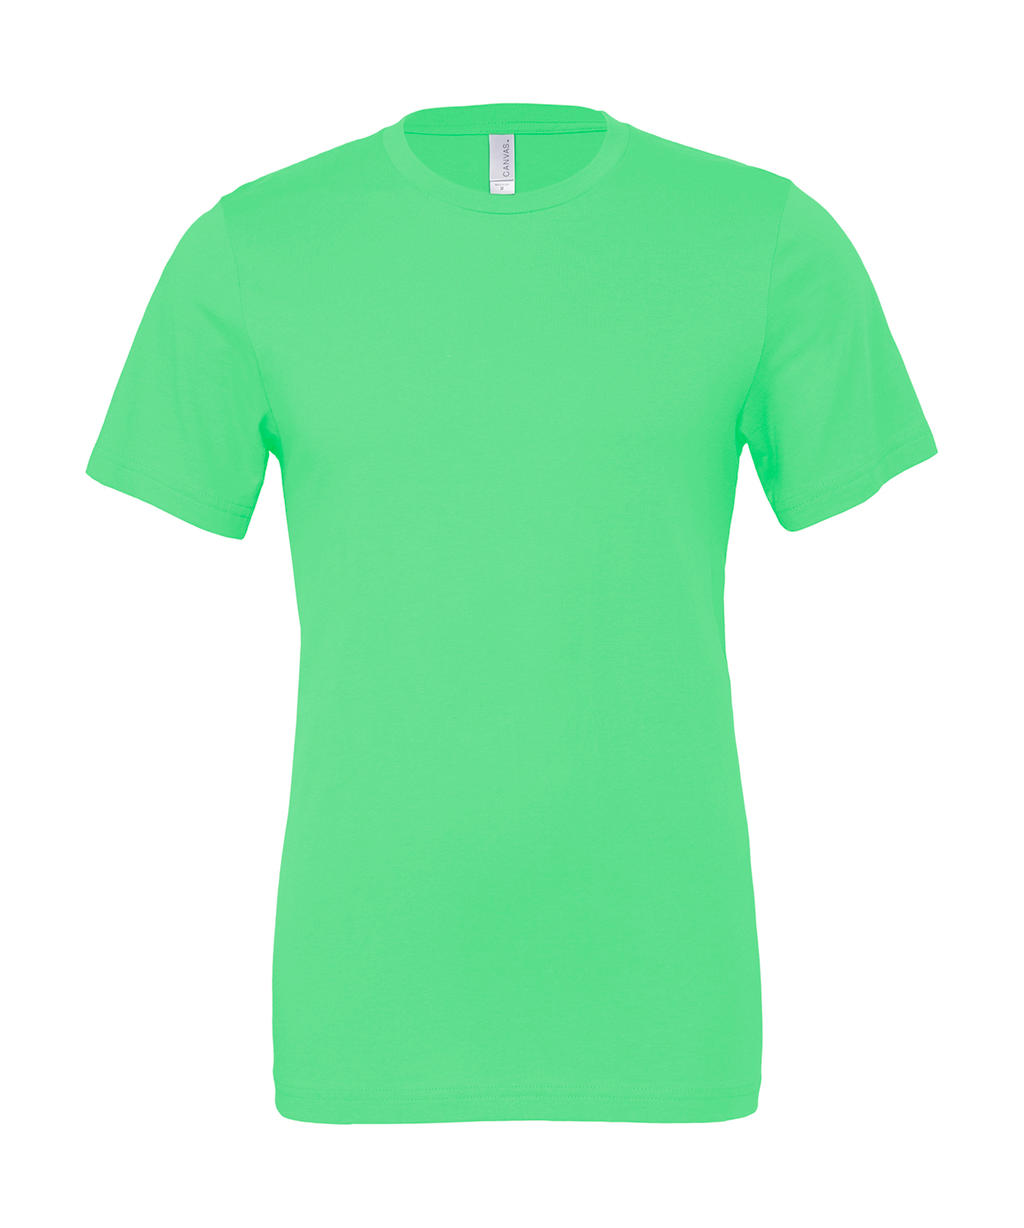 Tričko Bella Jersey - zelené svítící, XS